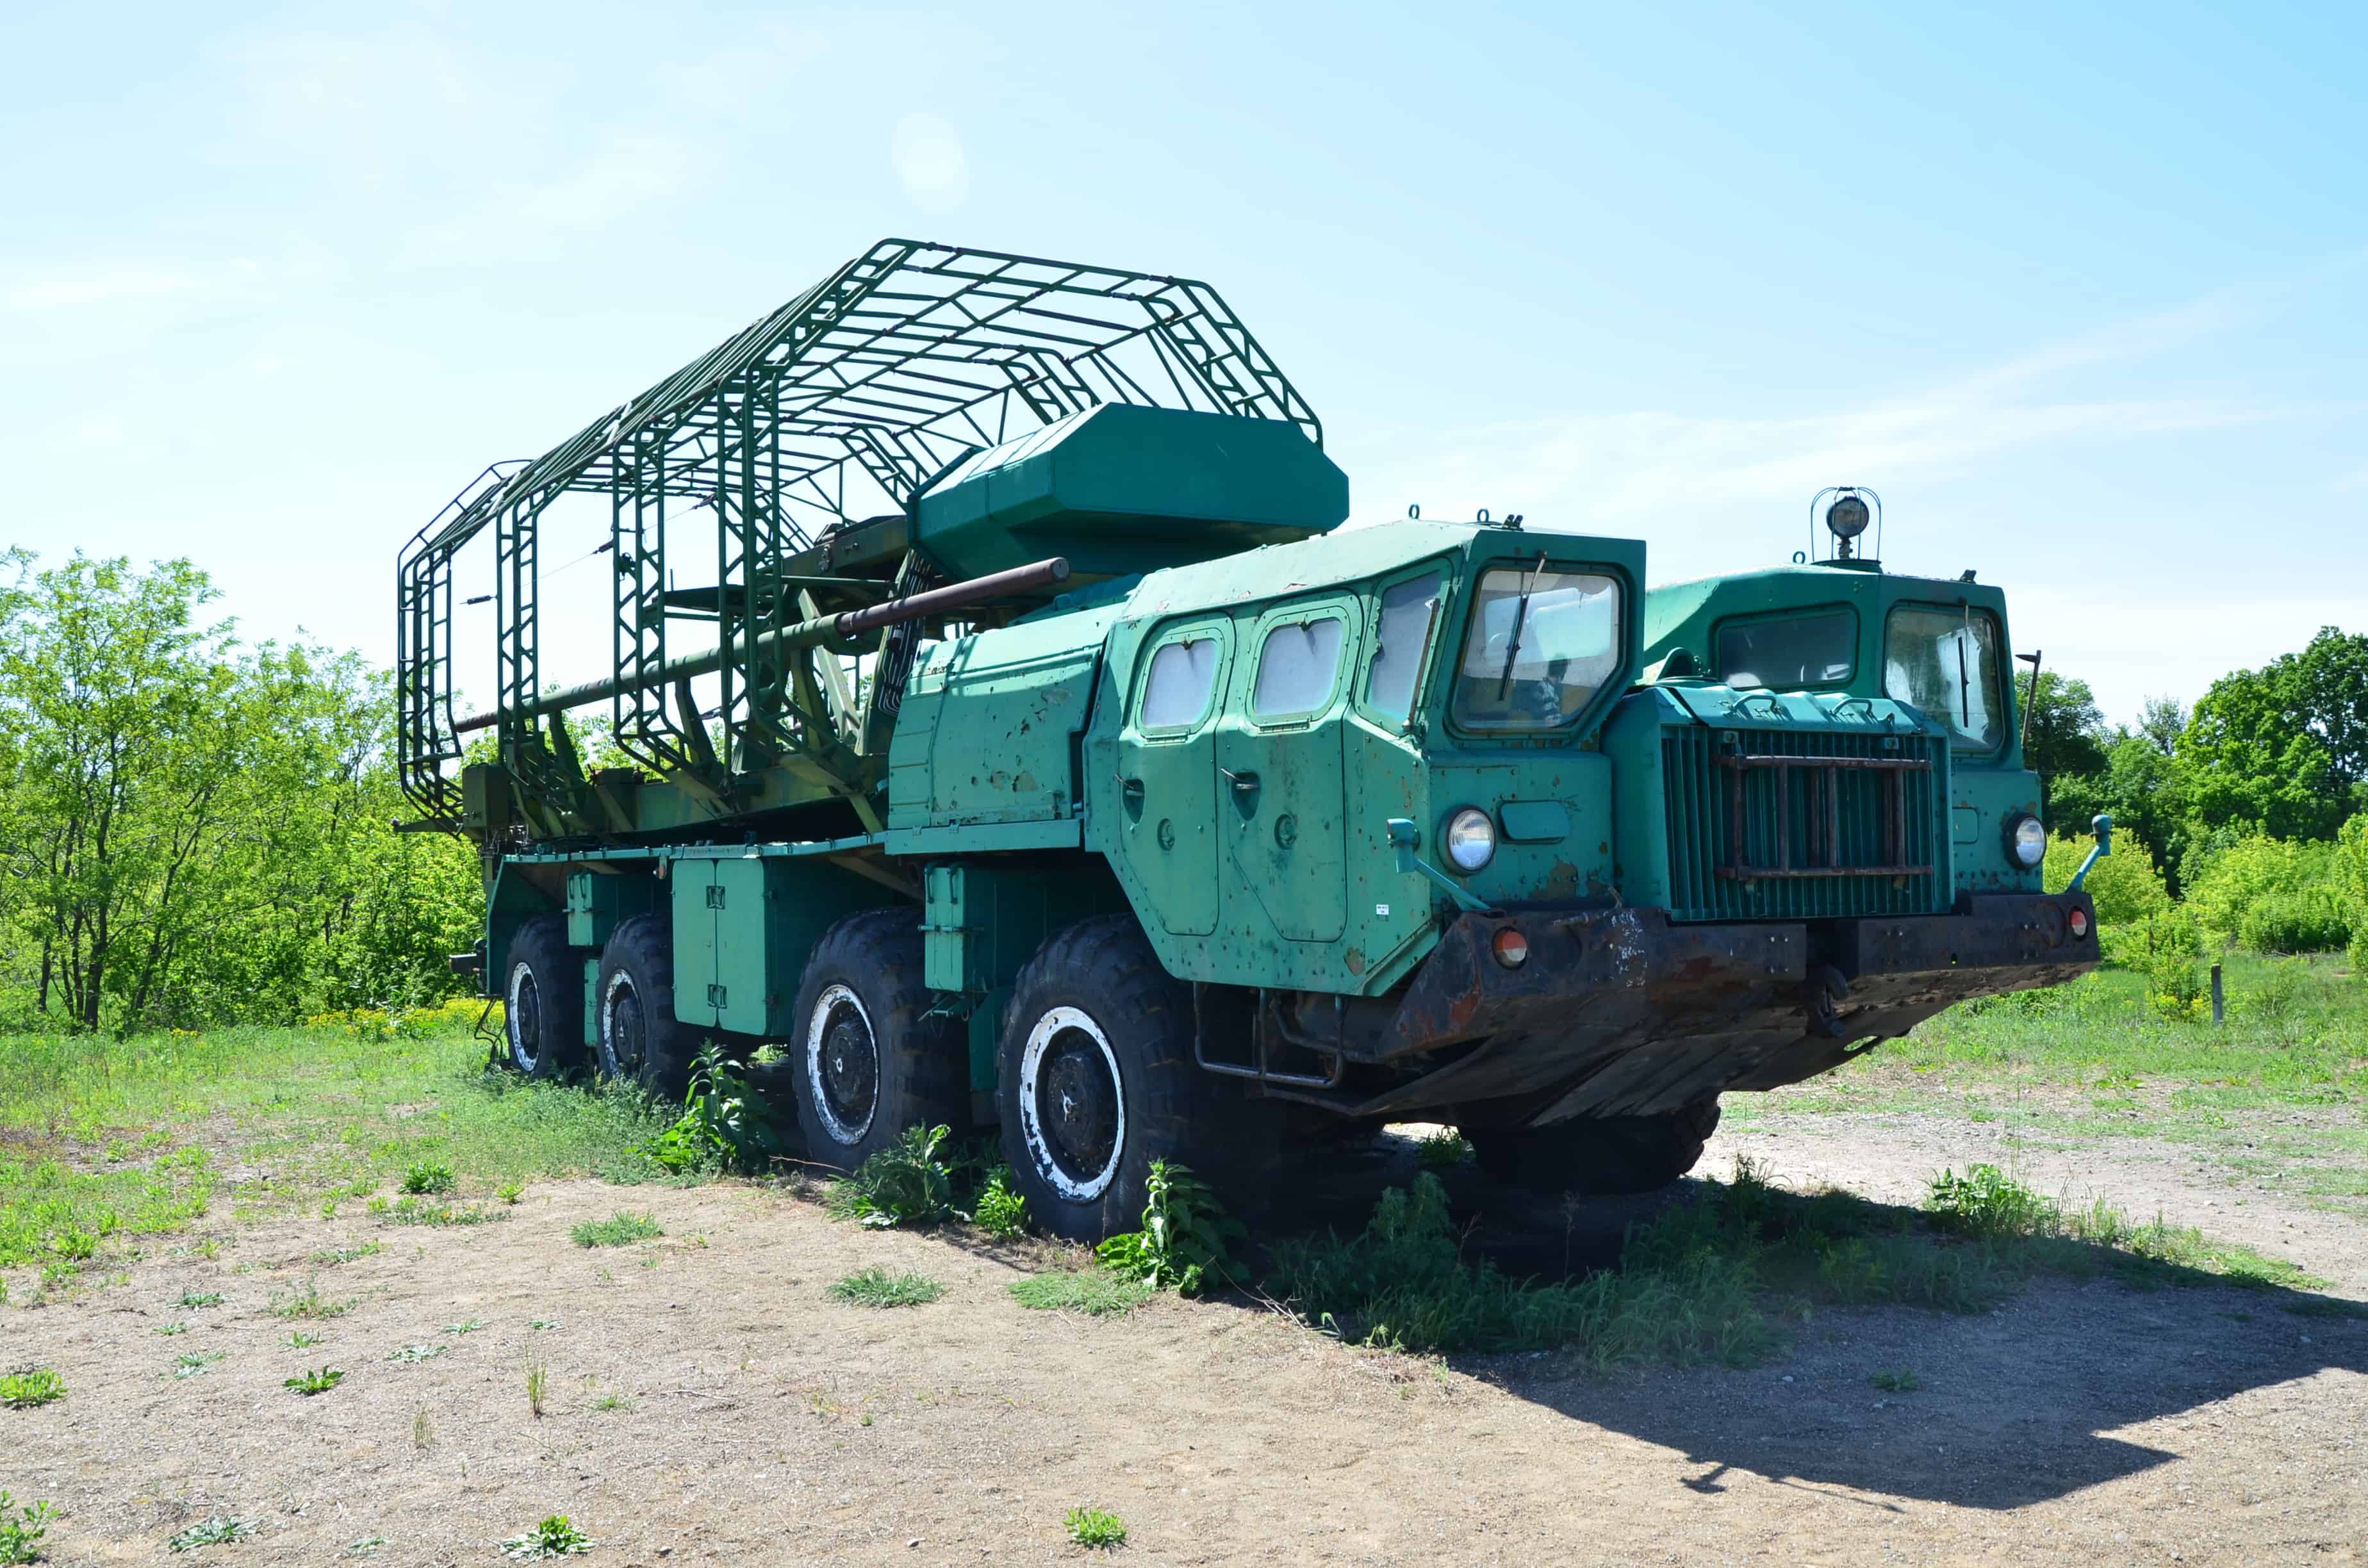 Specialized Vehicle at Strategic Missile Forces Museum near Pobuzke, Ukraine